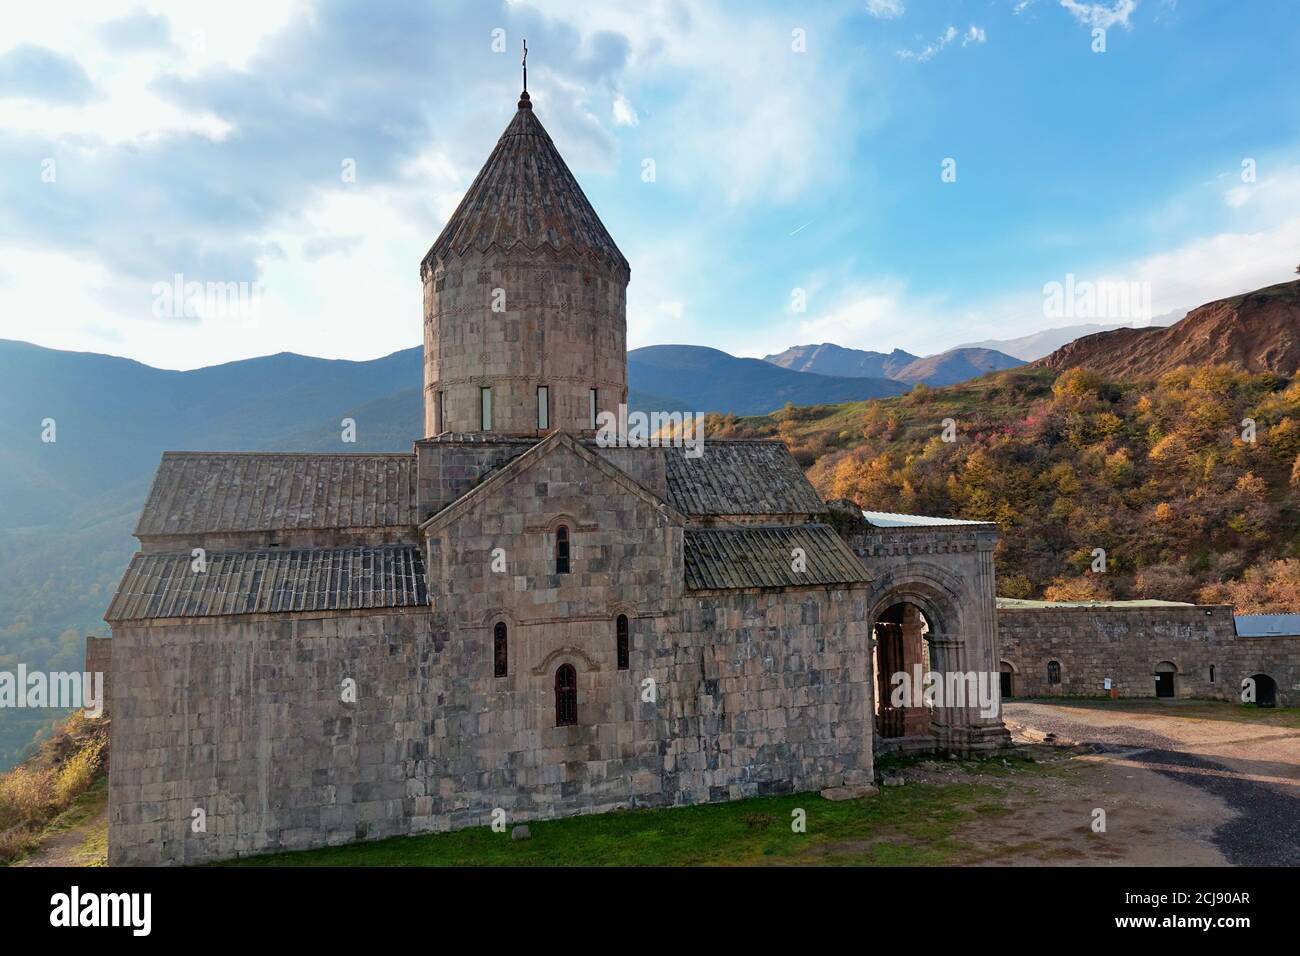 Vue rapprochée du monastère arménien apostolique du IXe siècle du Tatev en Arménie. Arbres et montagnes en arrière-plan en automne. Banque D'Images